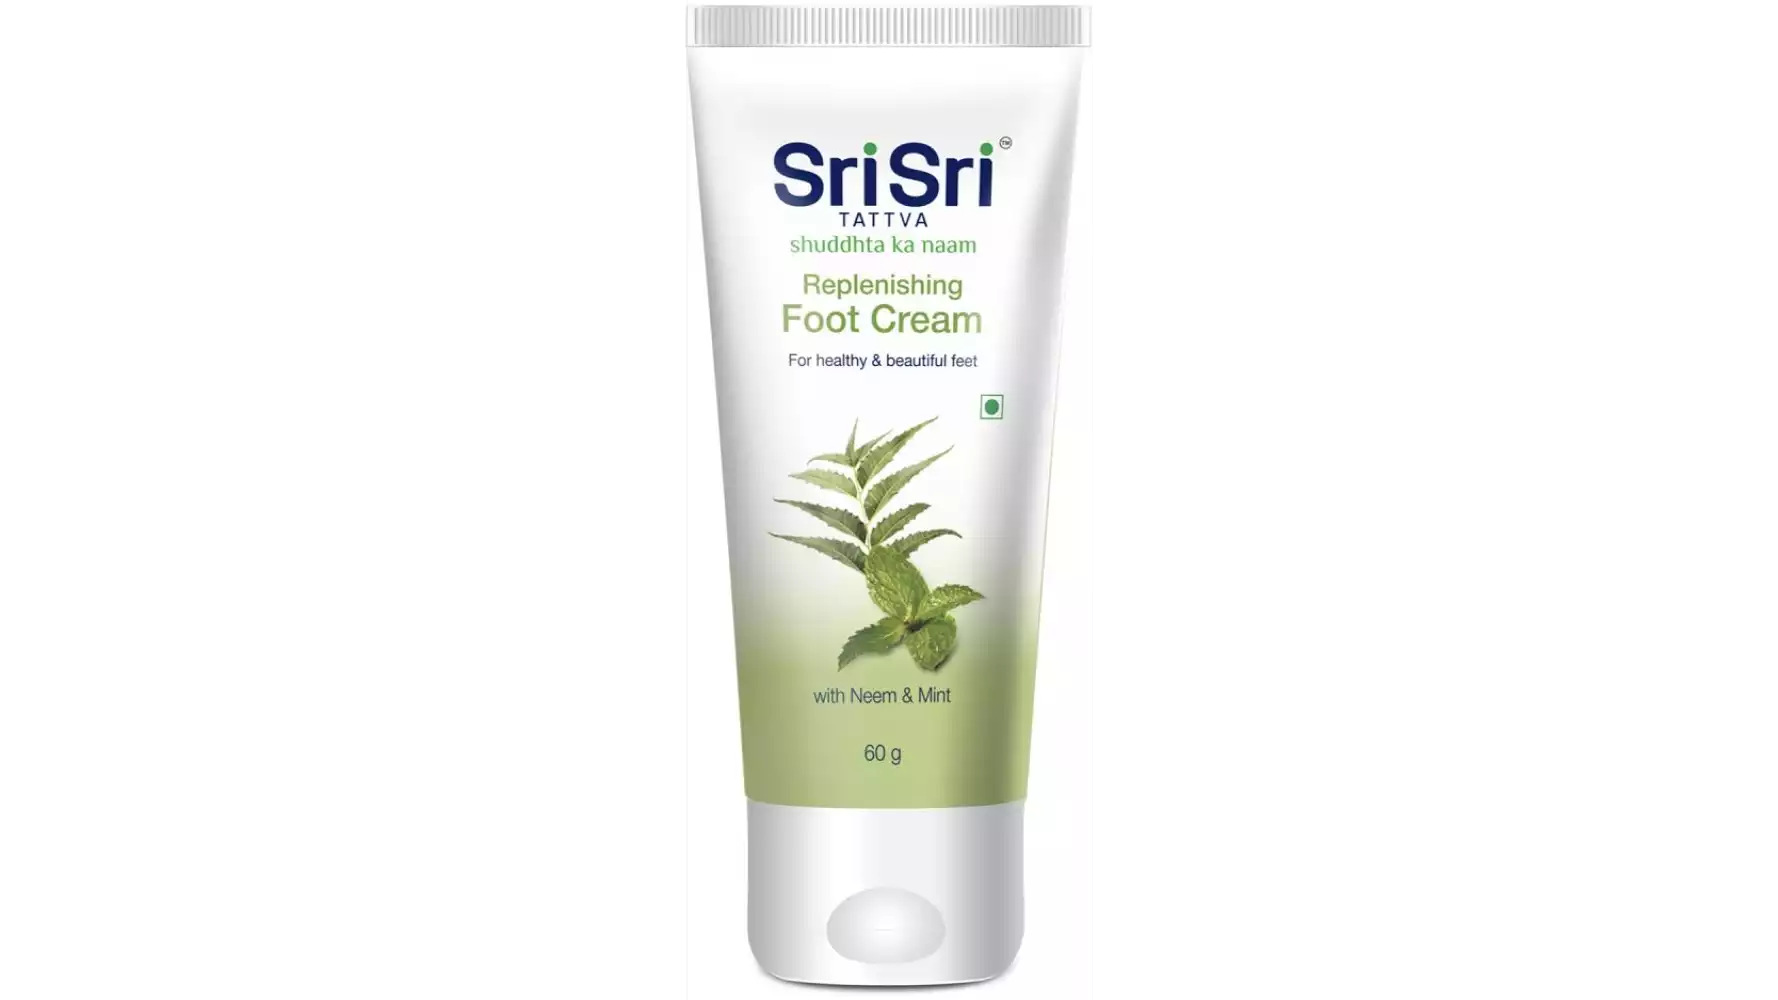 Sri Sri Tattva Replenishing Foot Cream (60g)